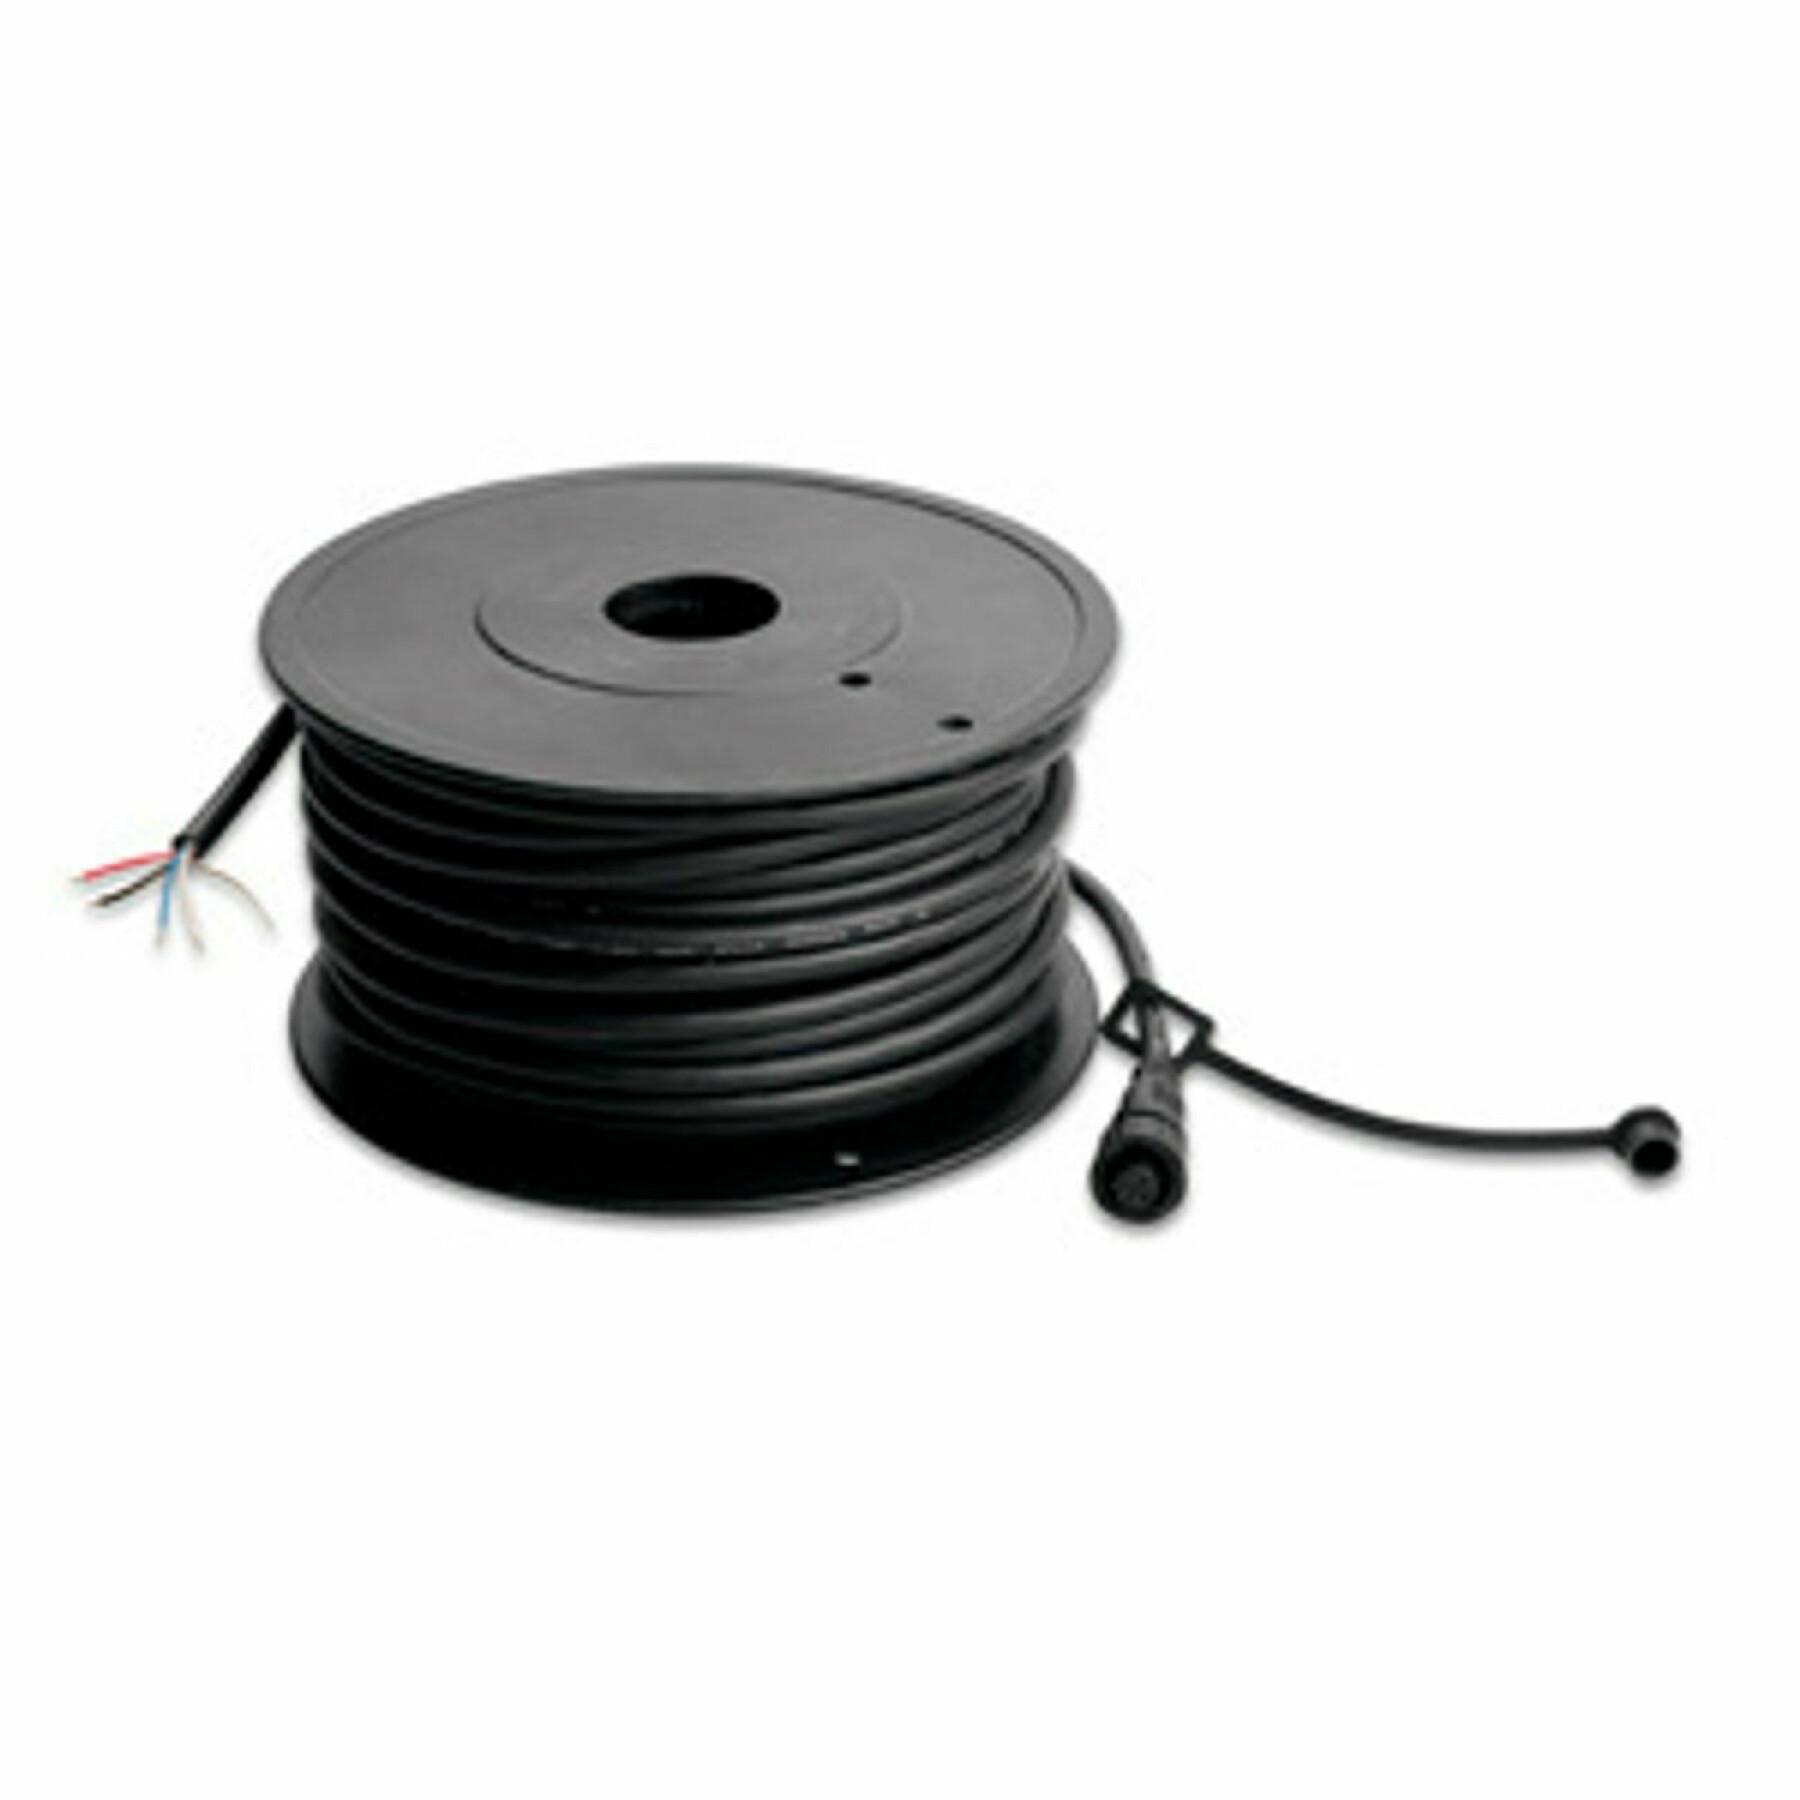 Câble Garmin nmea 2000 backbone/drop cable 98 ft